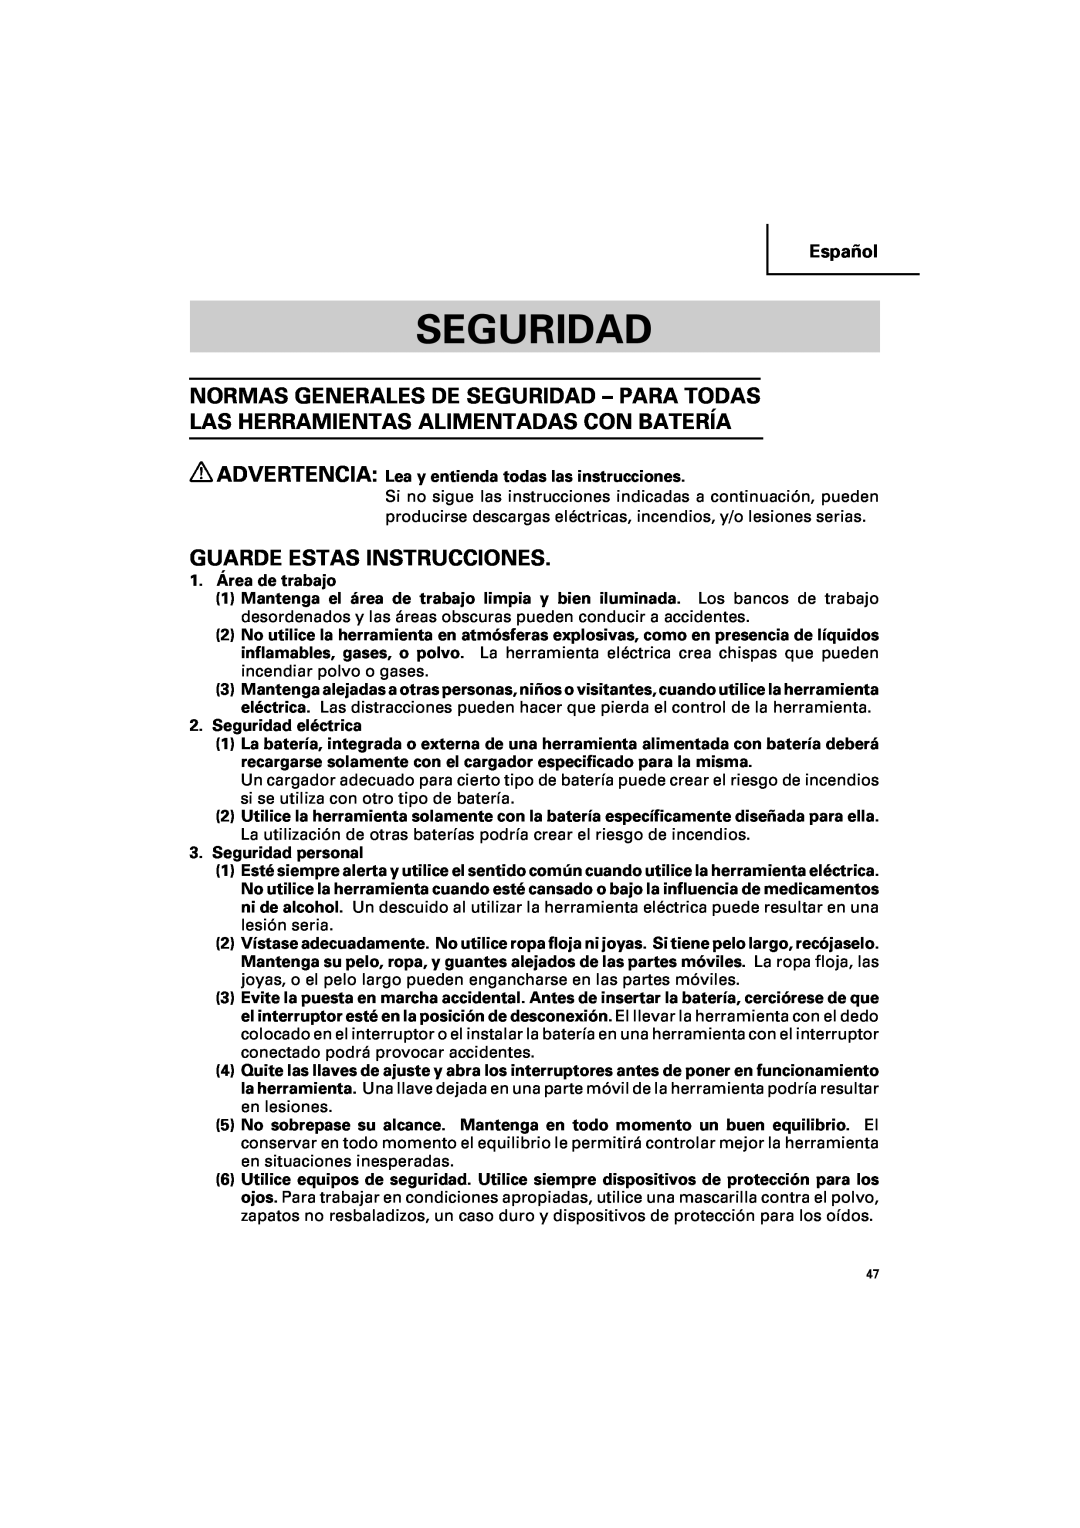 Hitachi DV 14DV, DV 18DV instruction manual Seguridad, Guarde Estas Instrucciones, Español 